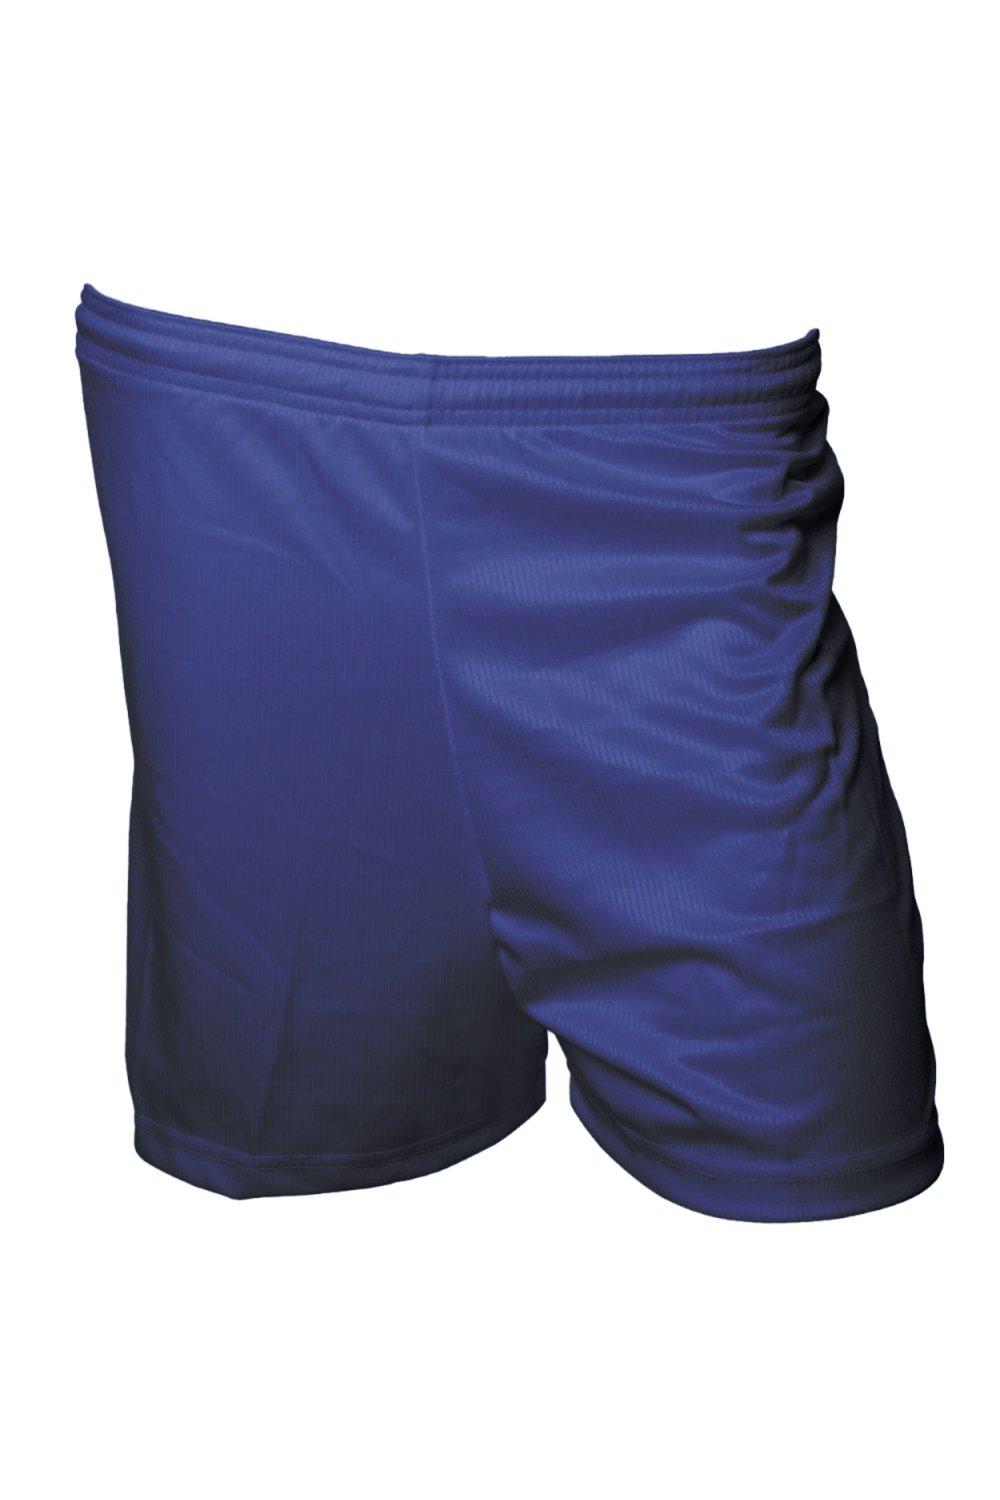 Футбольные шорты с микрополосками Precision, темно-синий